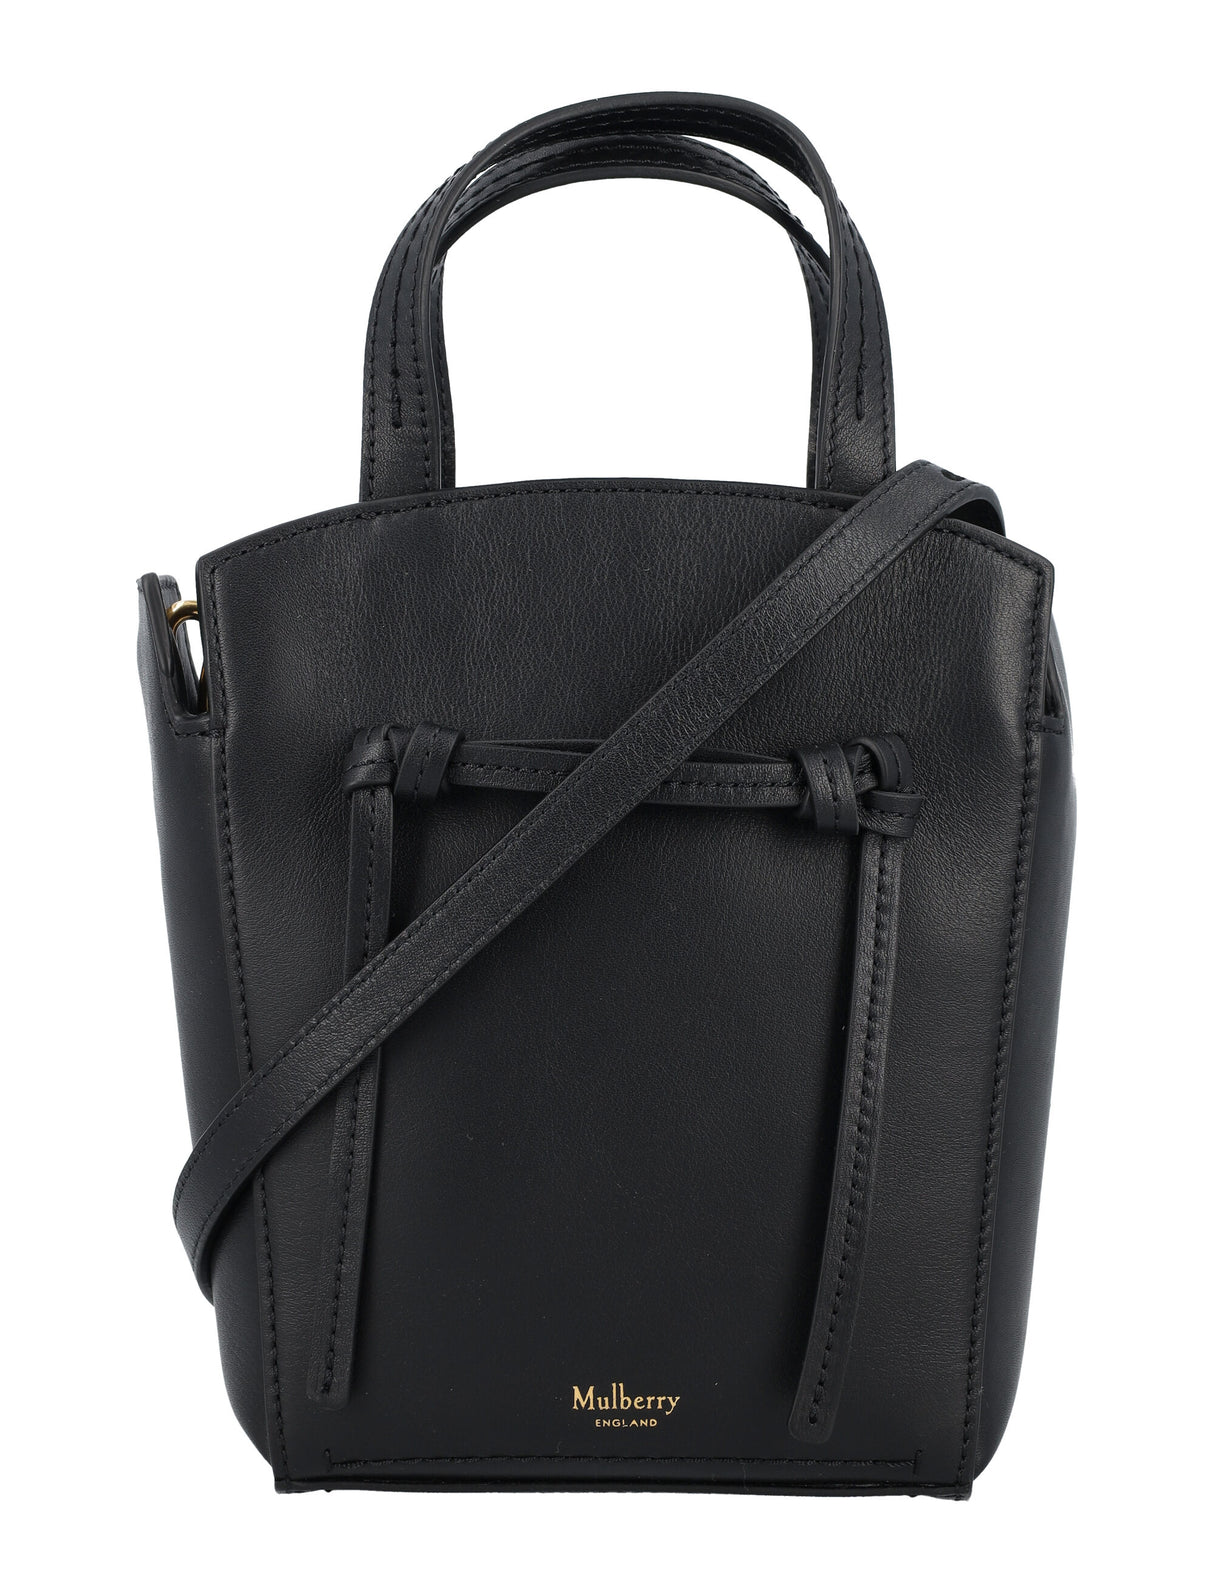 حقيبة يد صغيرة سوداء من الجلد مع حزام قابل للفصل وبطانة مايكروسويد - 18 سم